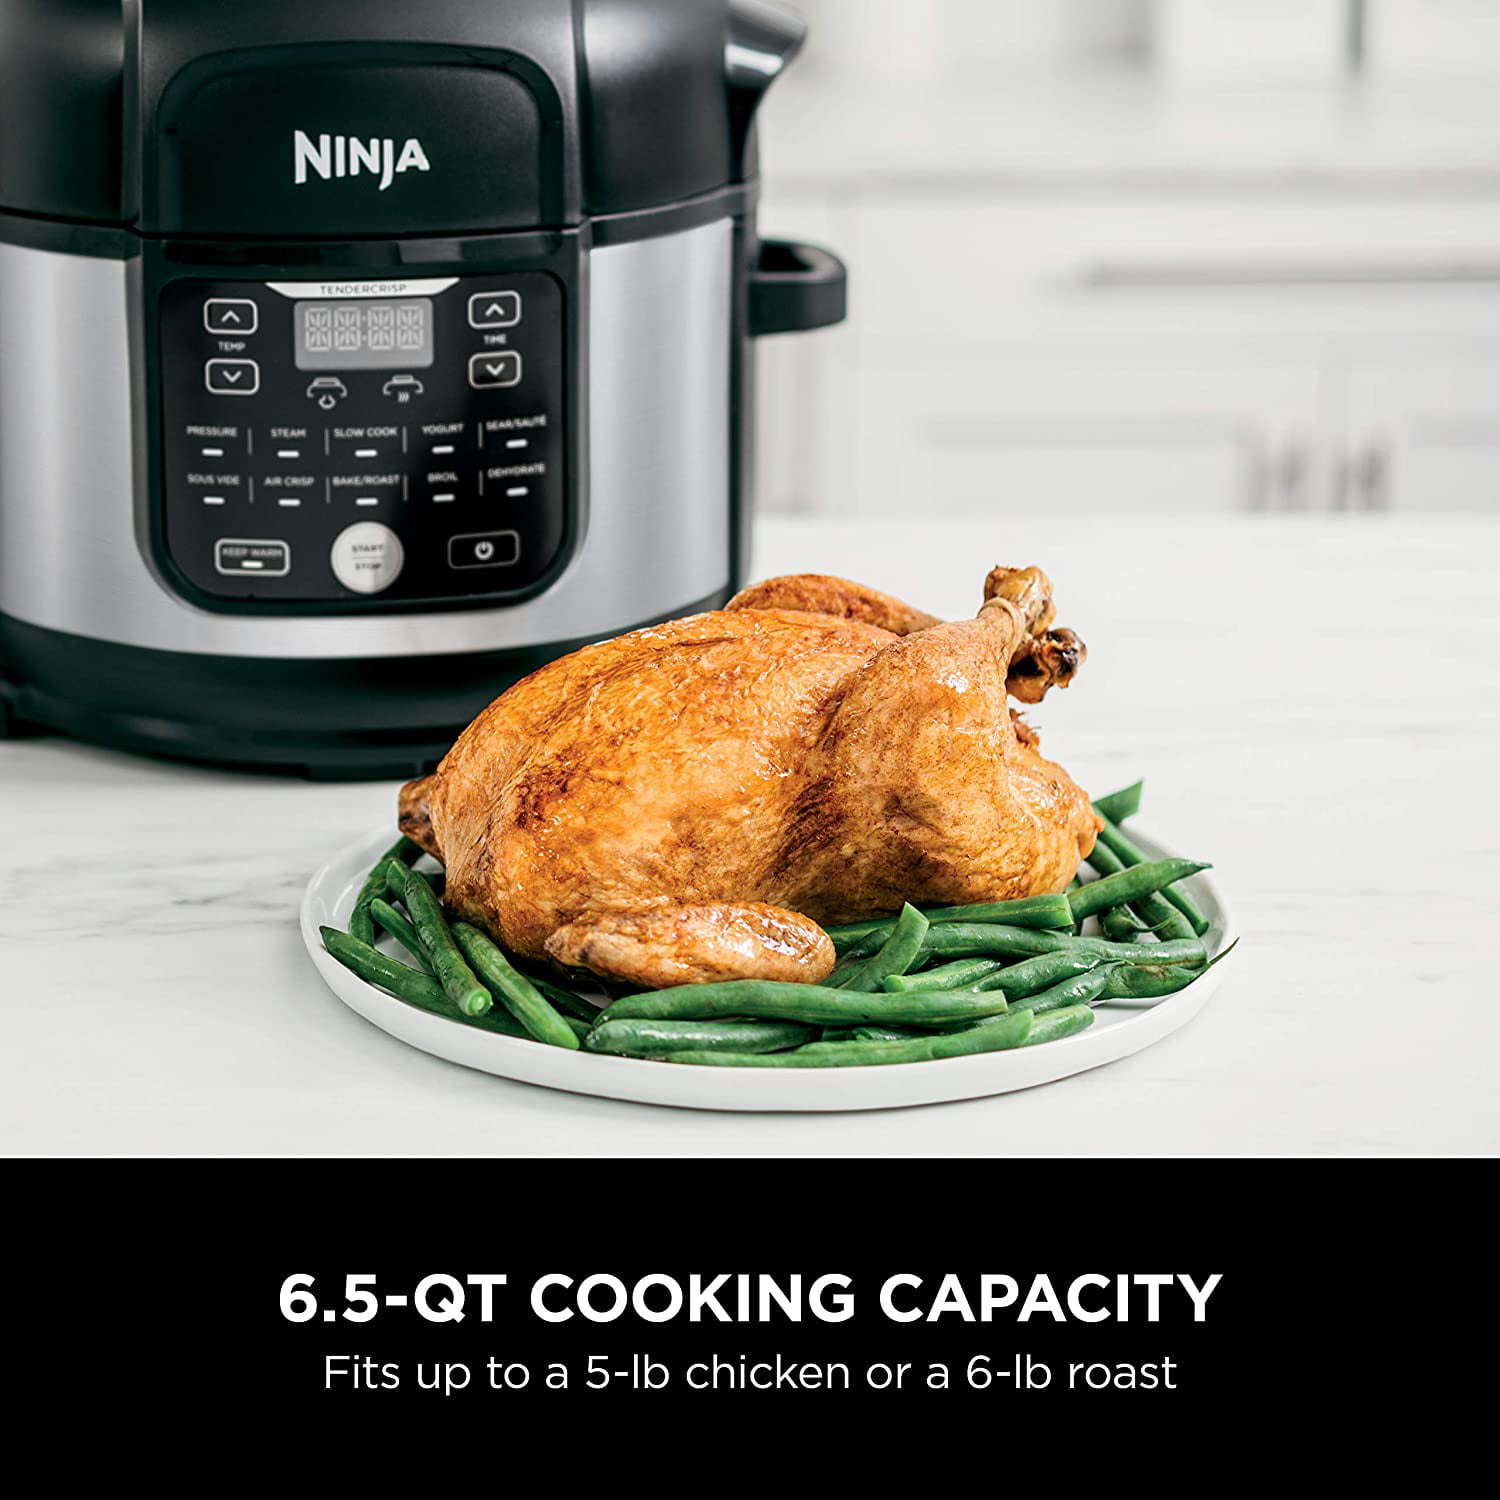 Ninja Foodi FD302 11 in 1 Pro Pressure CookerAir Fryer Black